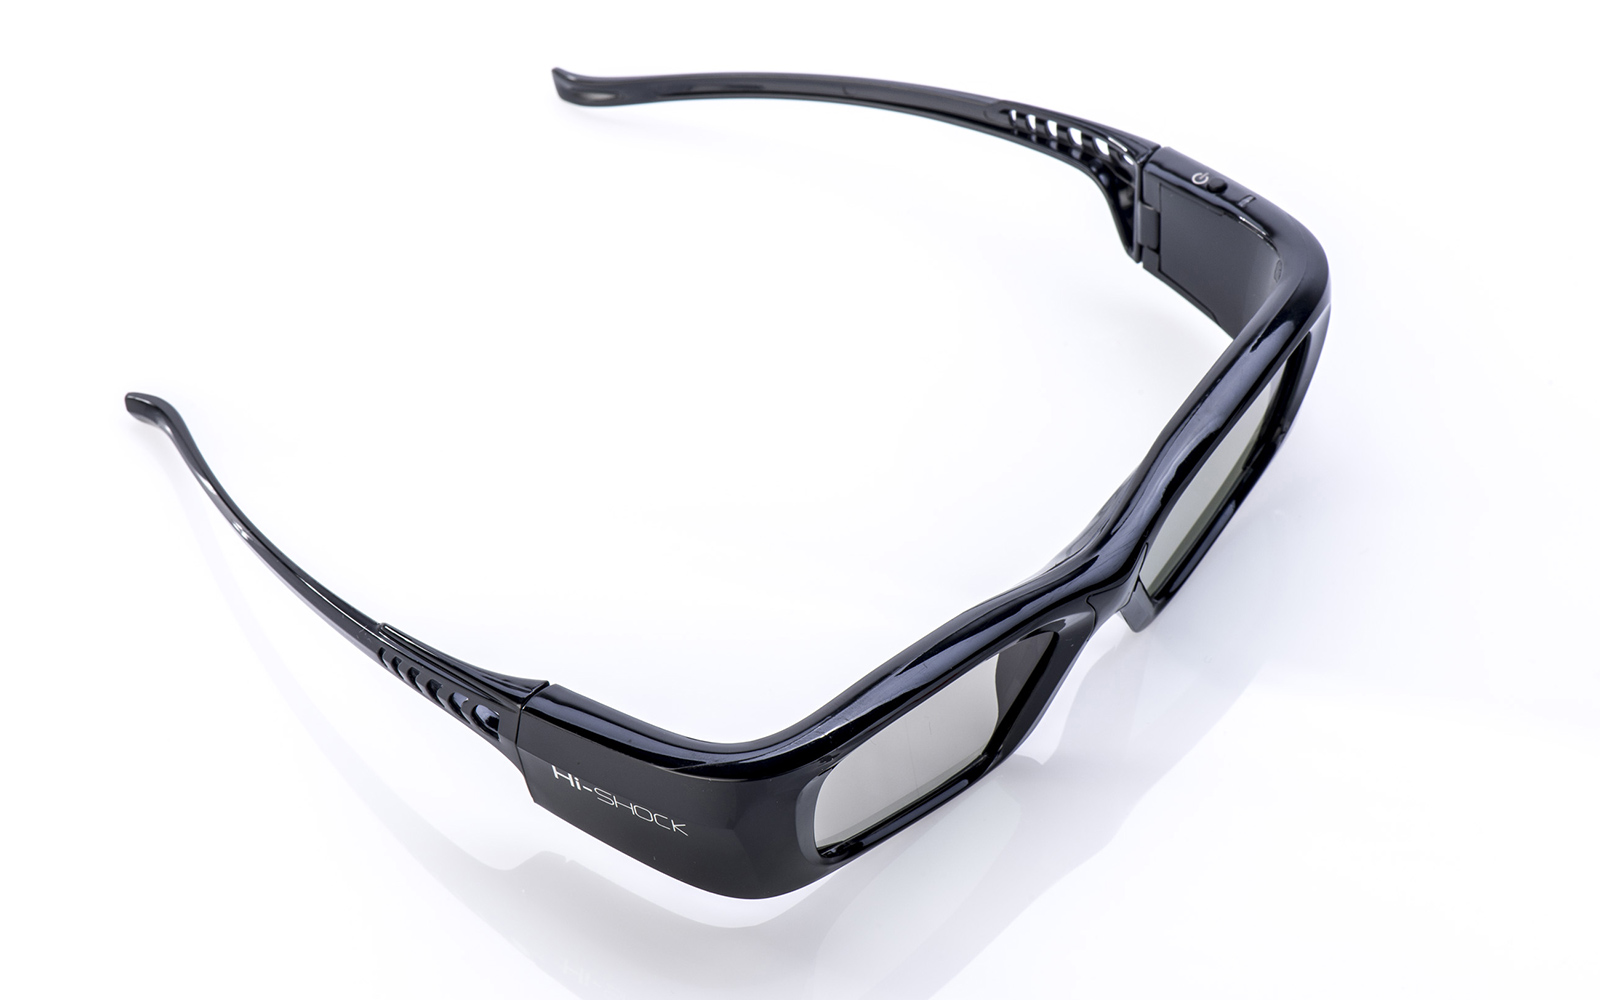 - 3D Link aktive 3D wiederaufladbar DLP Diamond Black Pro 3D HI-SHOCK - schwarz Brille für DLP Brille Beamer